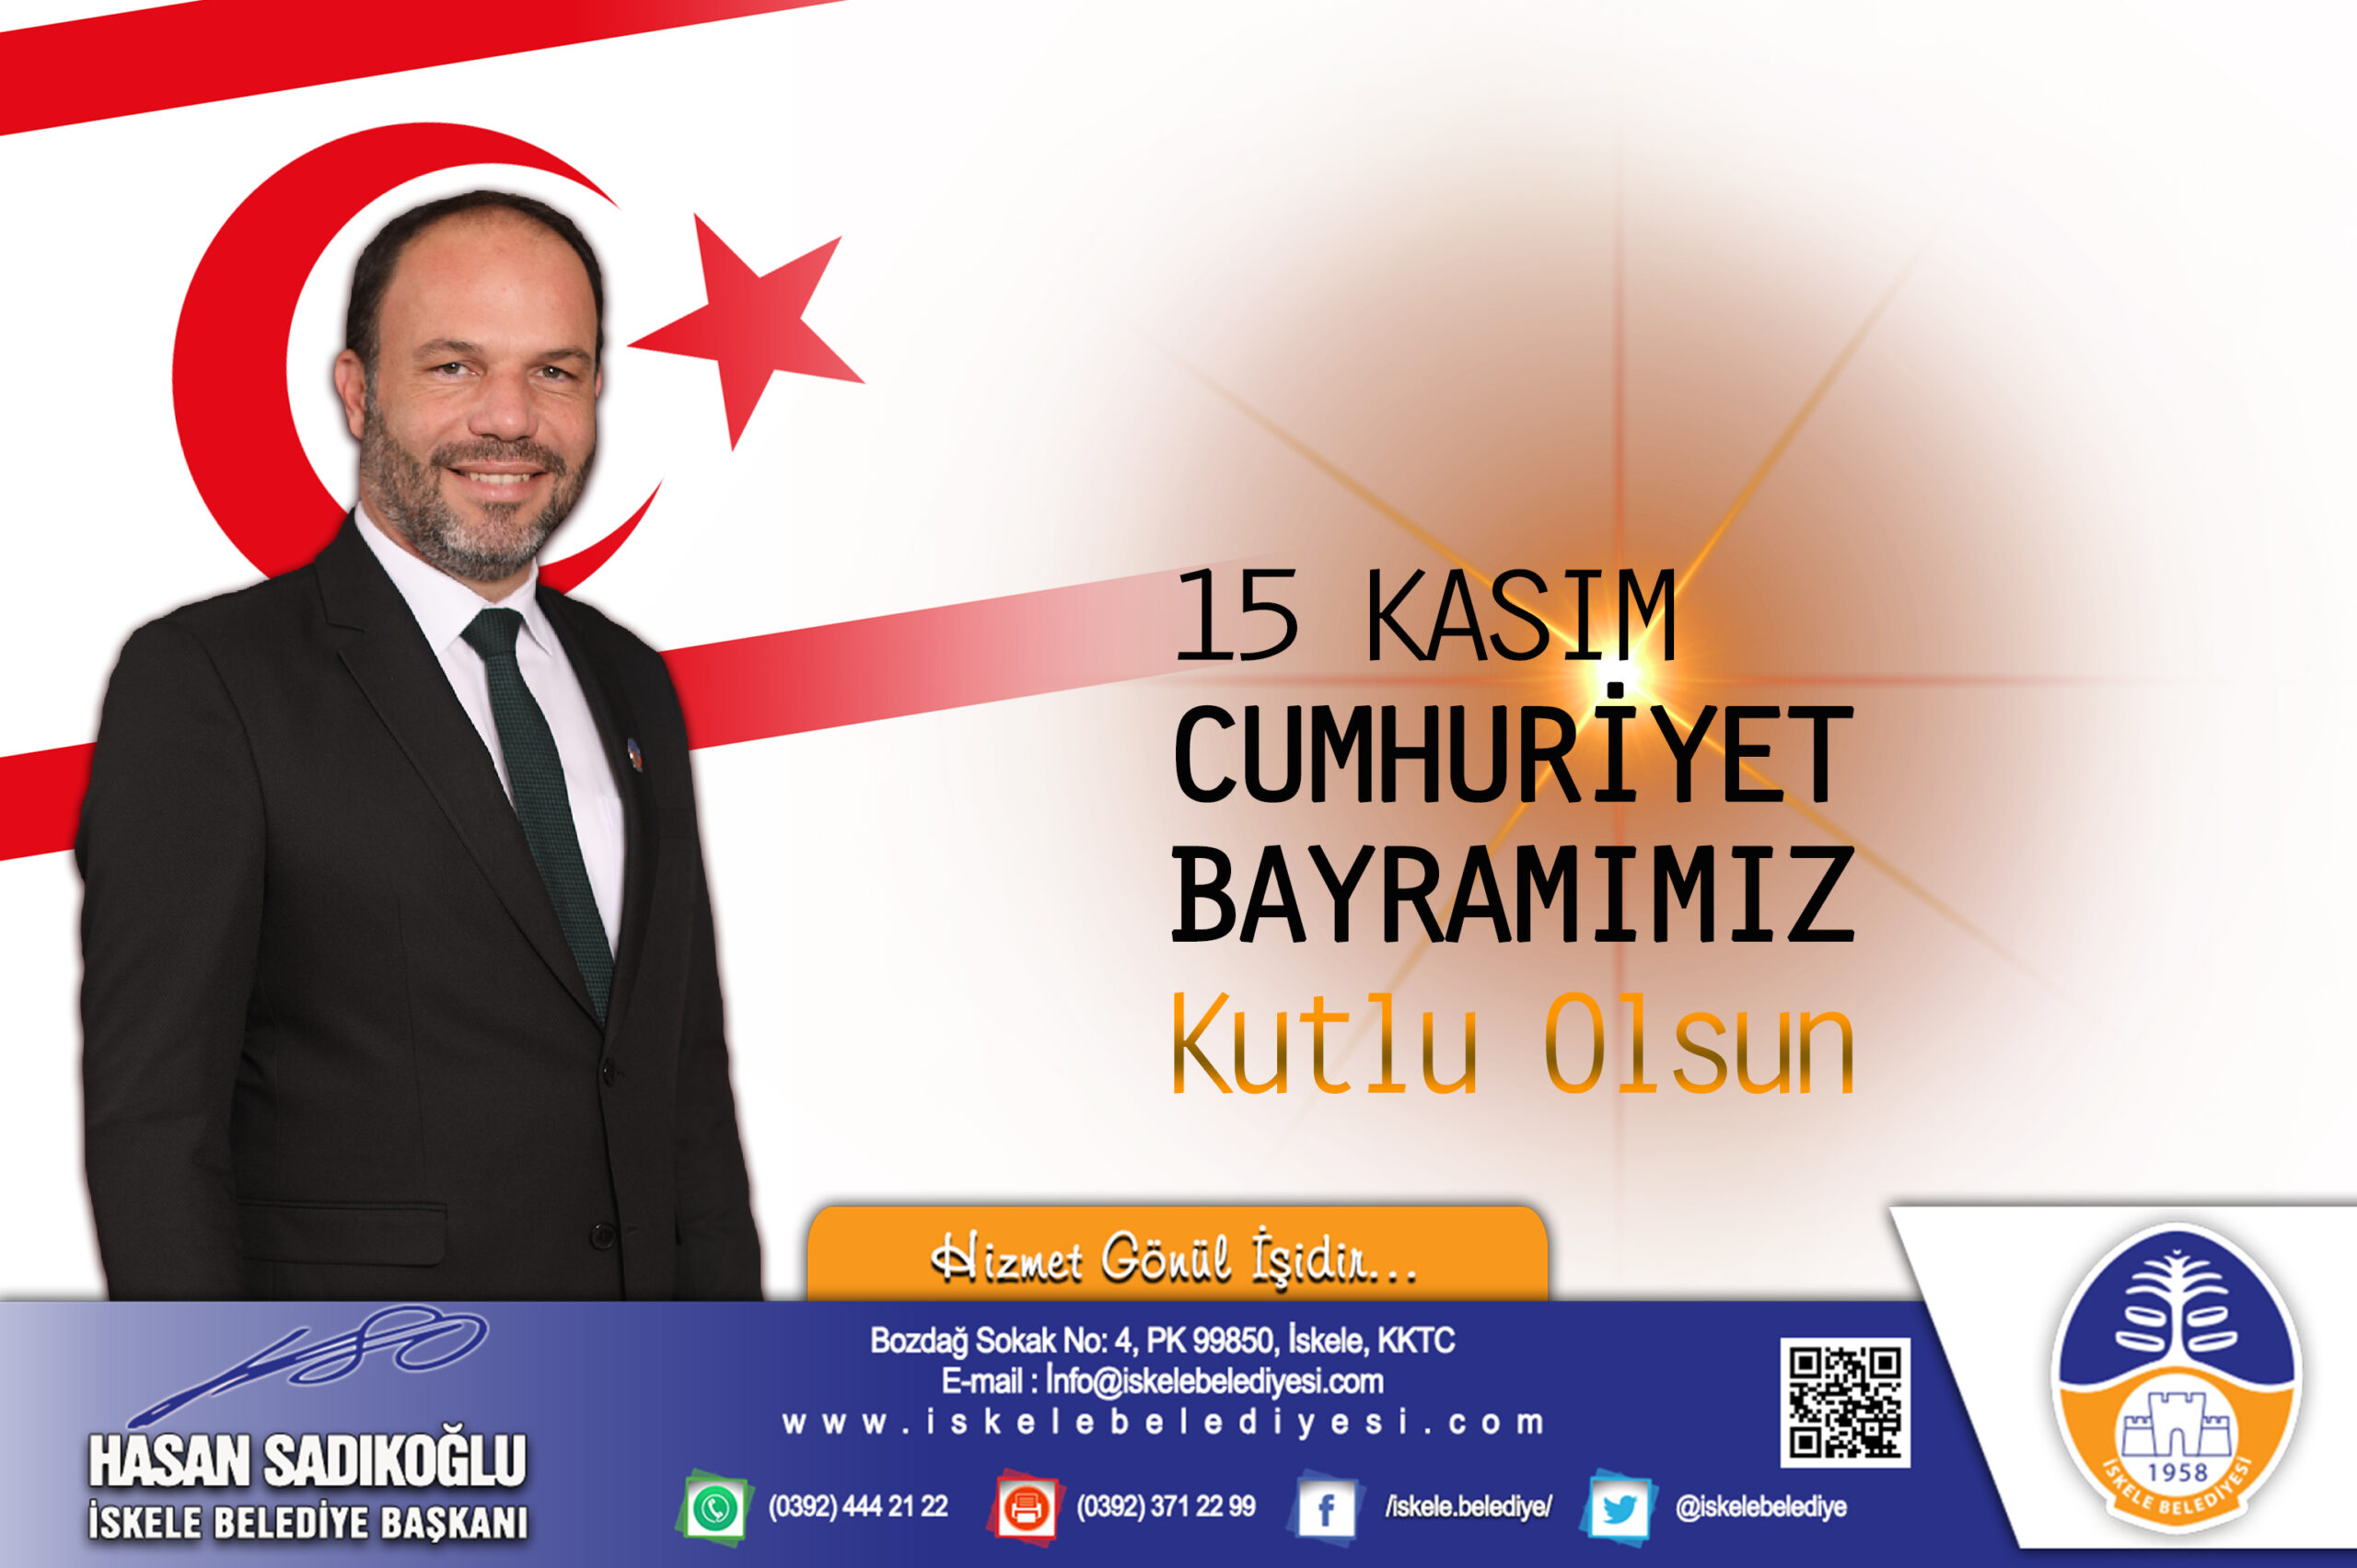 İskele Belediye Başkanı Hasan Sadıkoğlu, tüm halkımızın 15 Kasım Cumhuriyet Bayramını kutluyor. Yasasın egemenlik, yaşasın özgülük, YAŞASIN CUMHURİYET!